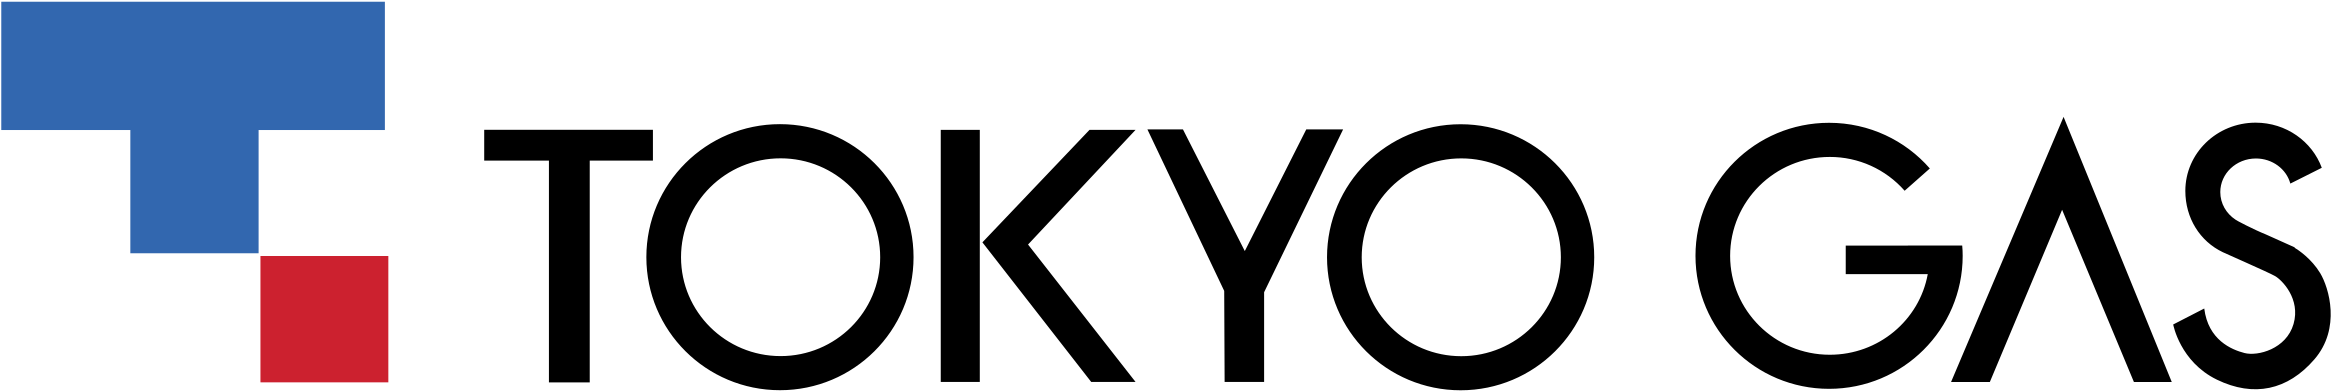 Tokyo Gas Logo PNG